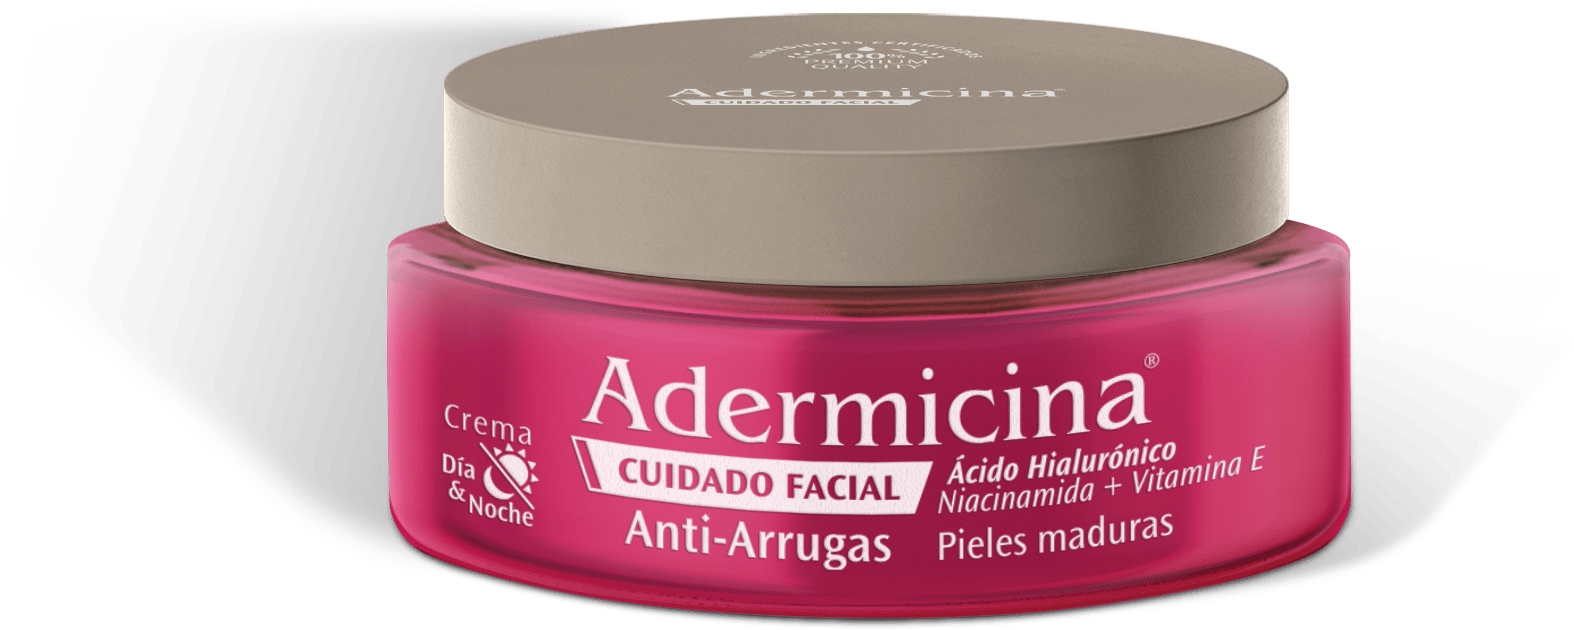 Adermicina-Banner-linea-Cuidado-Anti-Arrugas